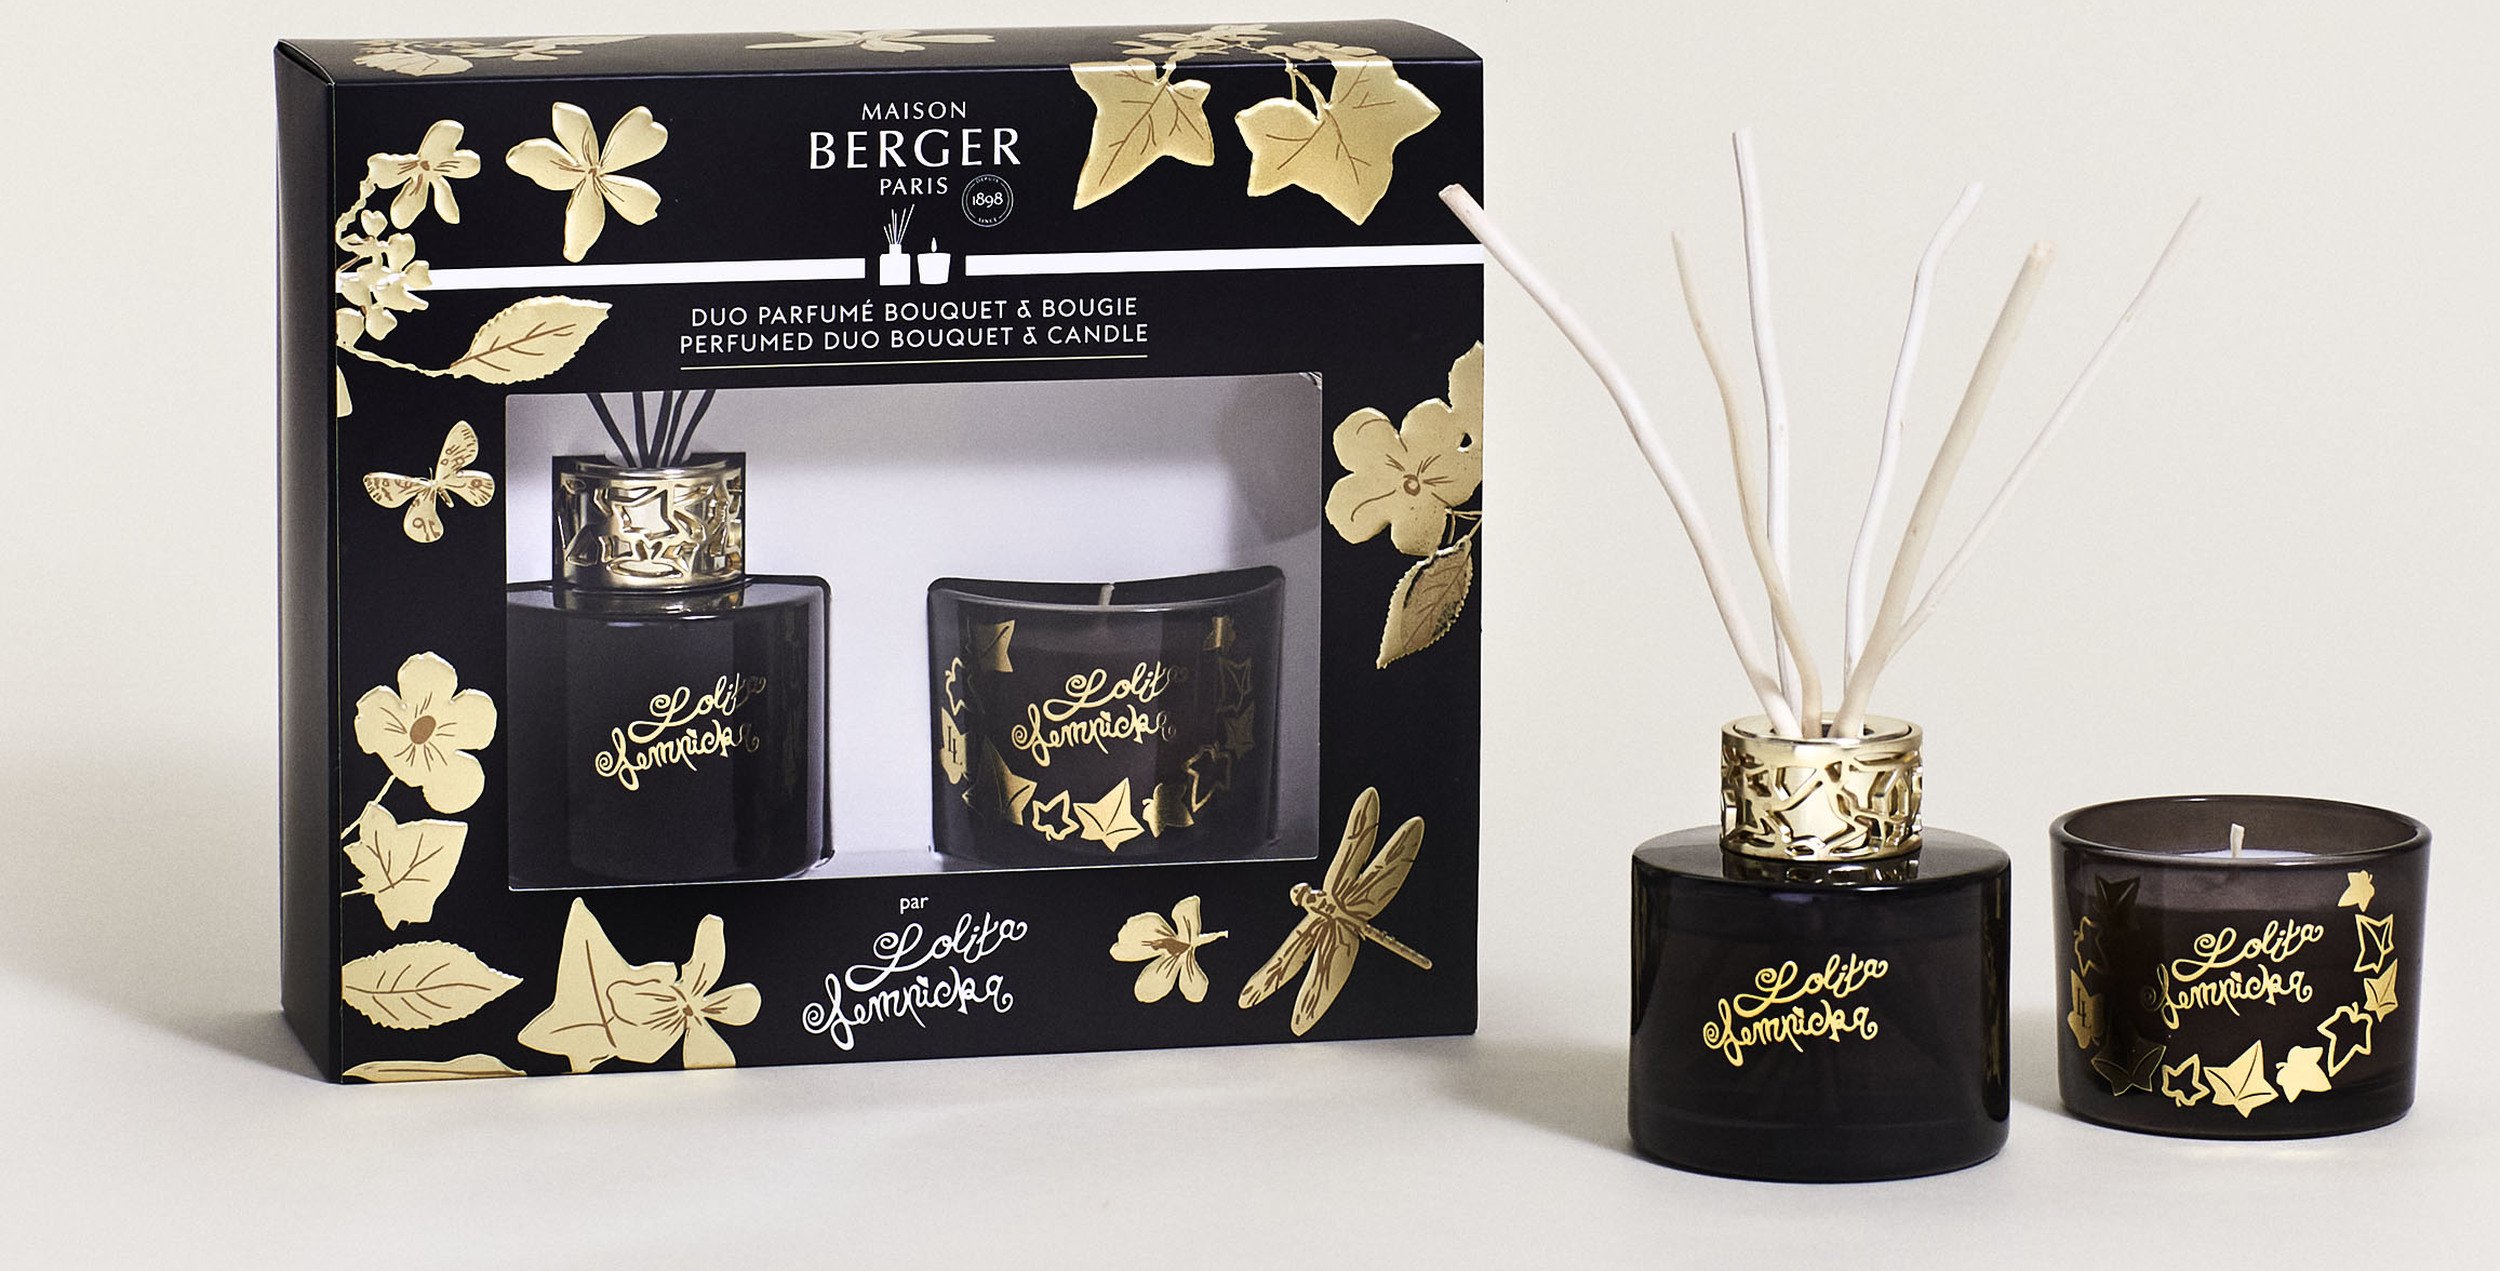 Coffret Maison Berger Duo Parfumé Lolita Lempicka - 35,00€